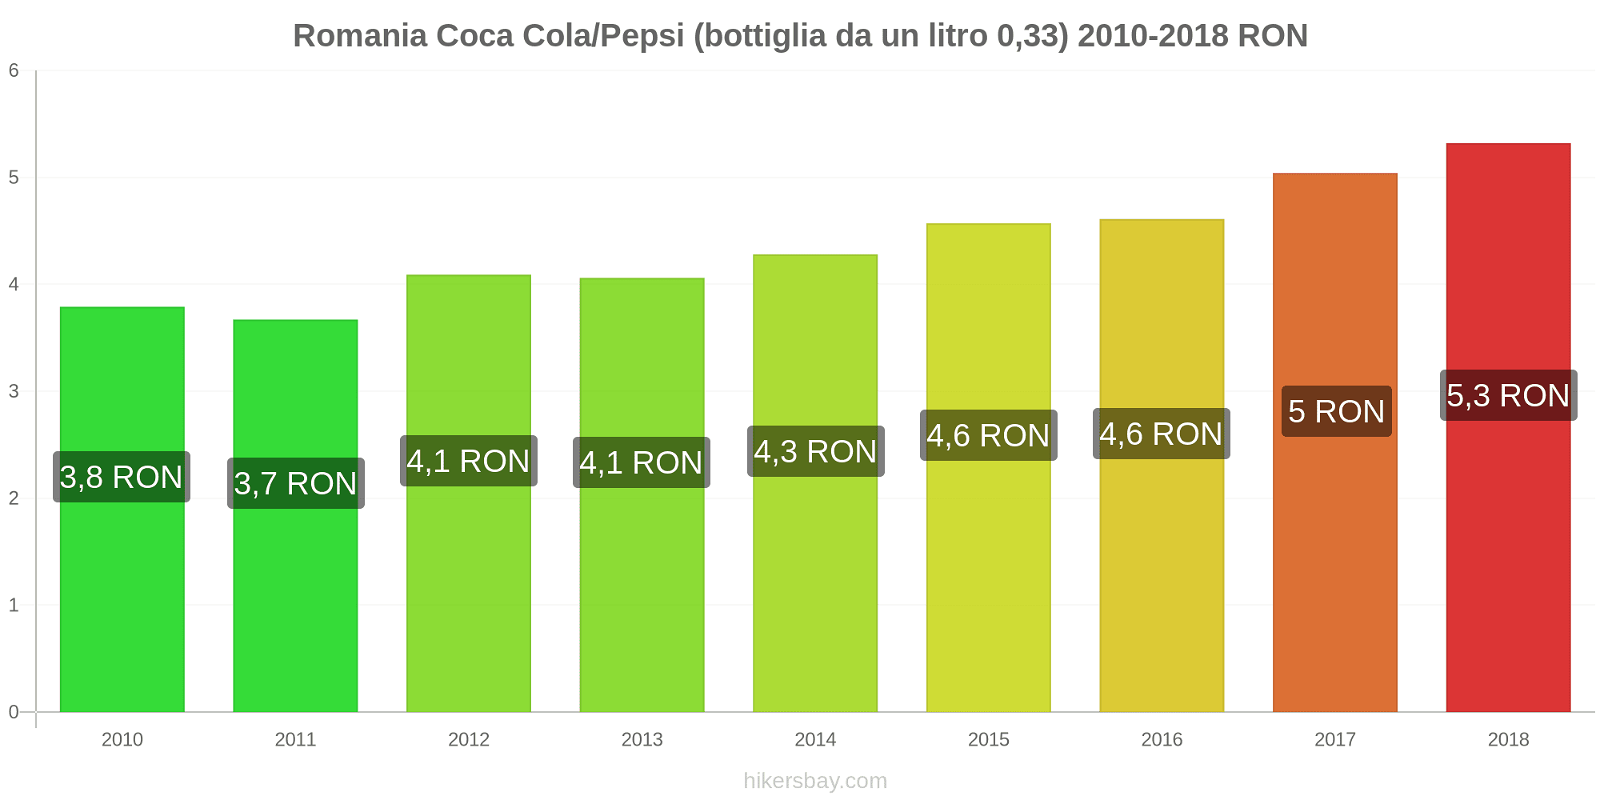 Romania cambi di prezzo Coca-Cola/Pepsi (bottiglia da 0.33 litri) hikersbay.com